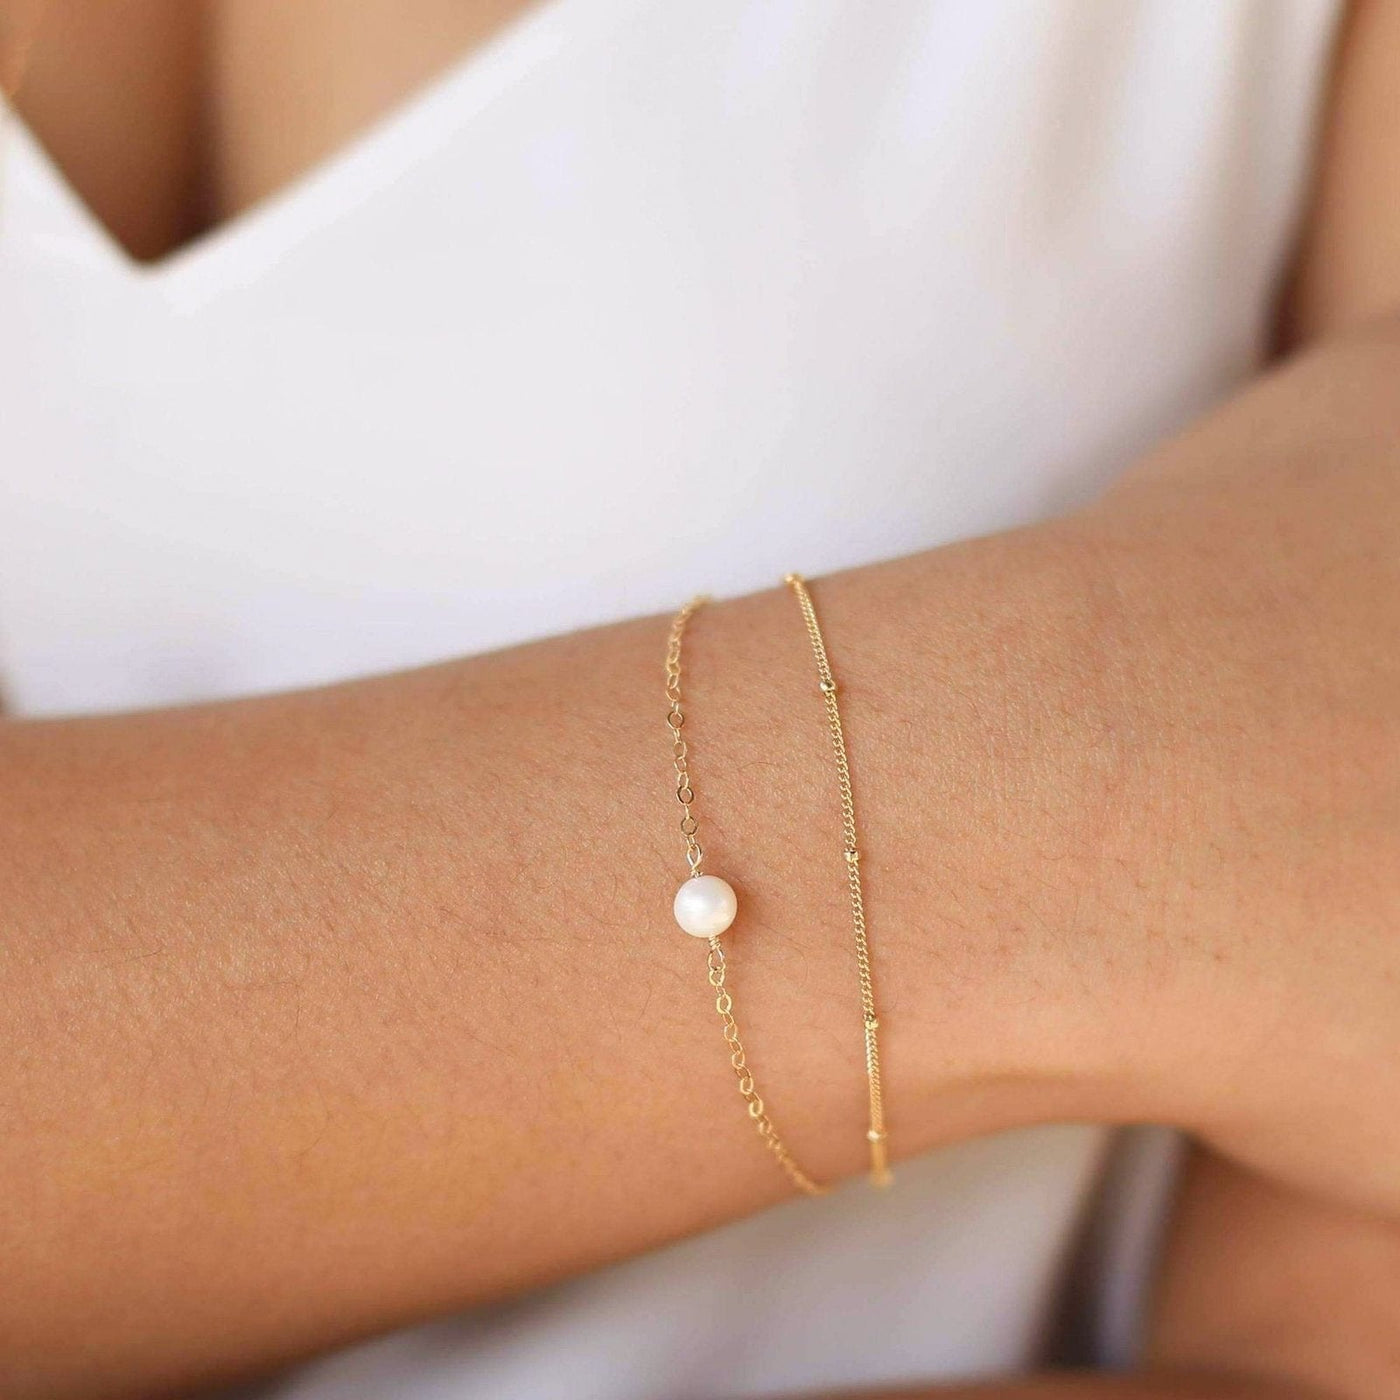 Dainty Satellite Bracelet by Simple & Dainty Jewelry